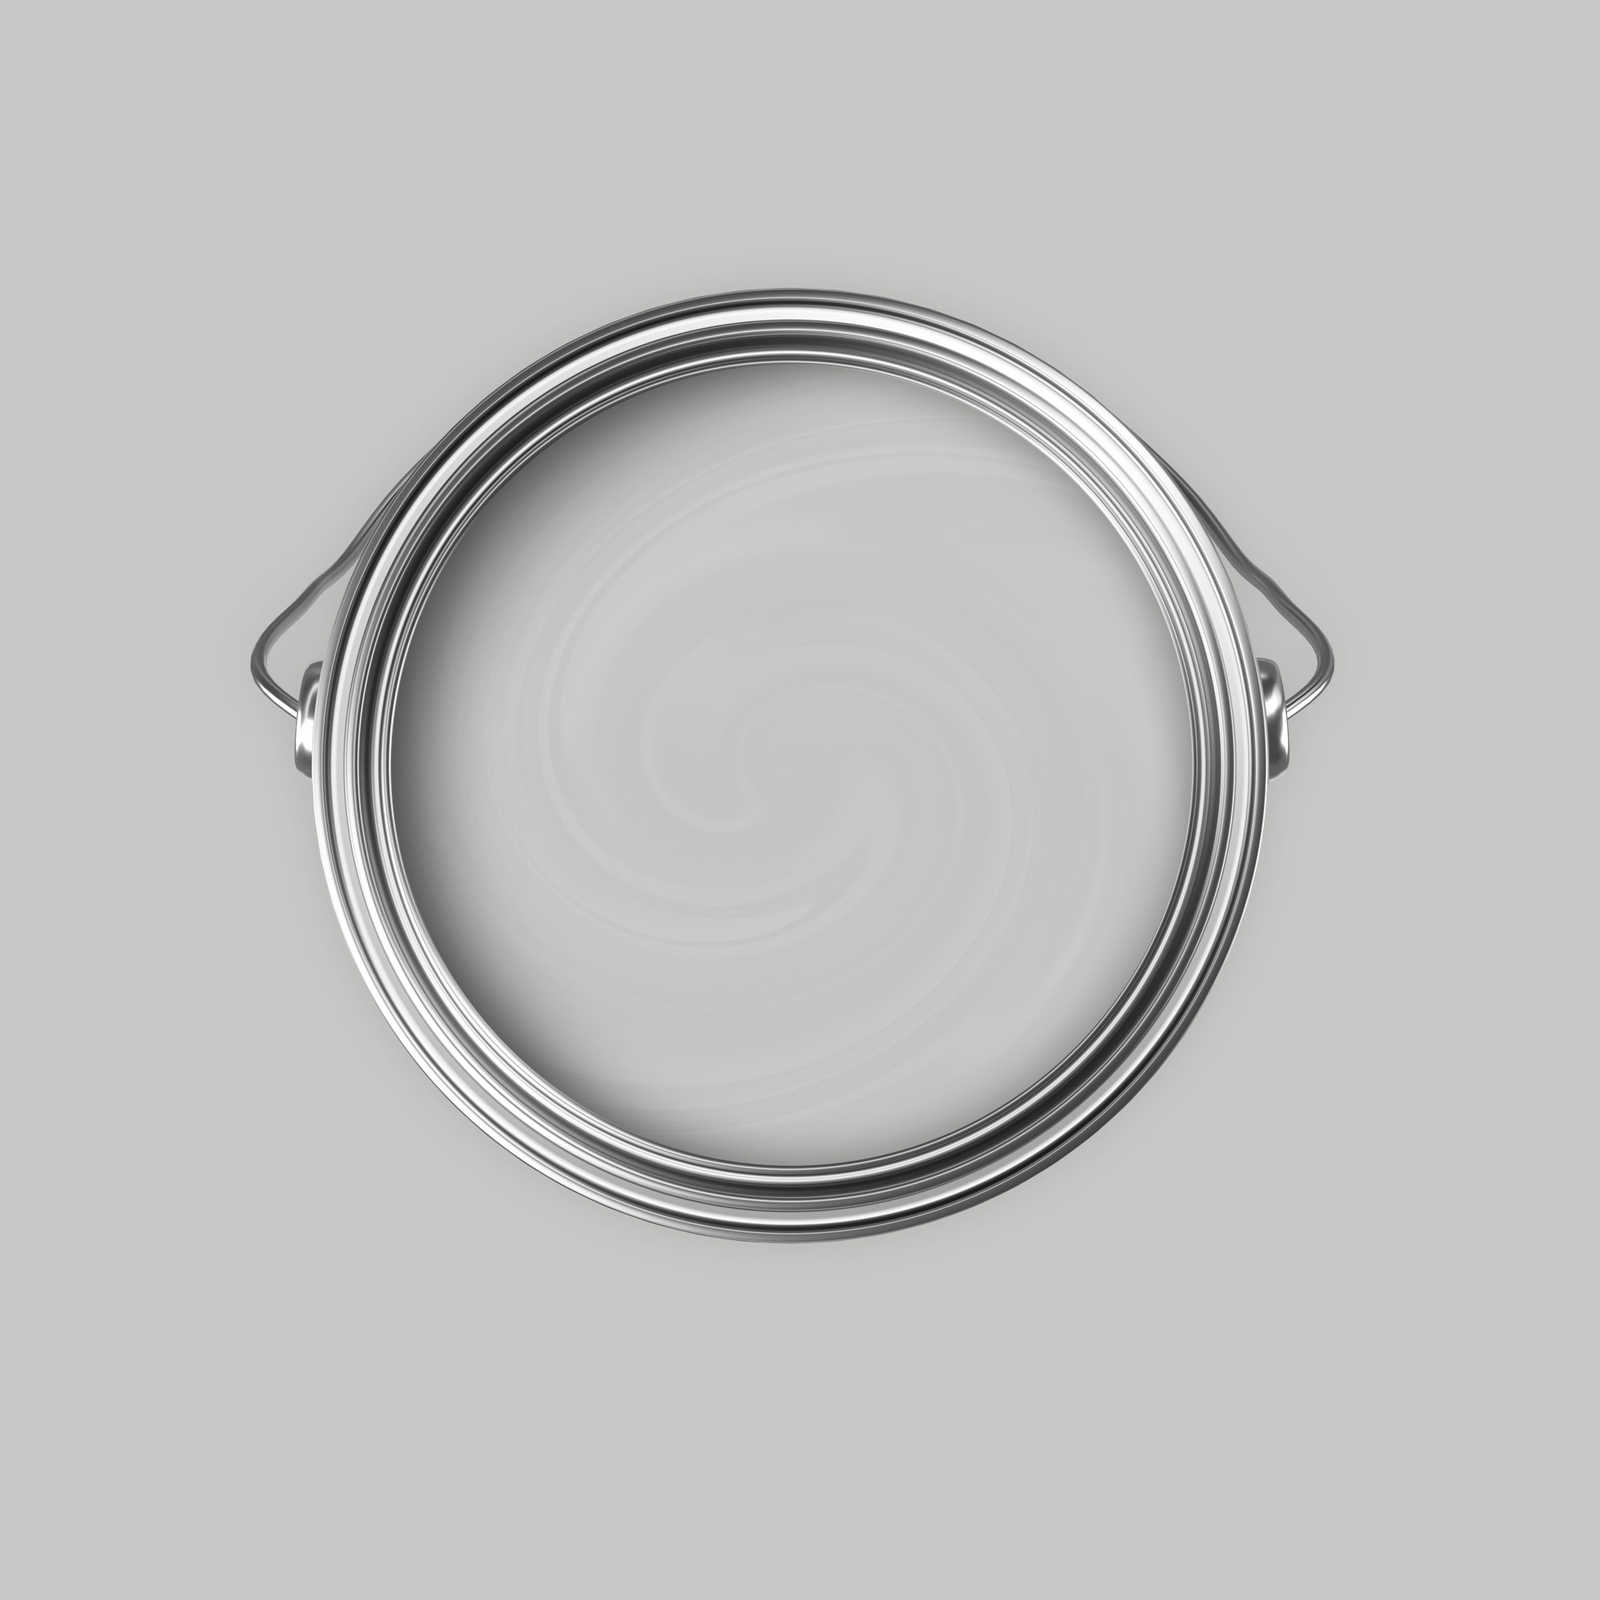             Premium Wandfarbe wohnliches Silber »Creamy Grey« NW109 – 5 Liter
        